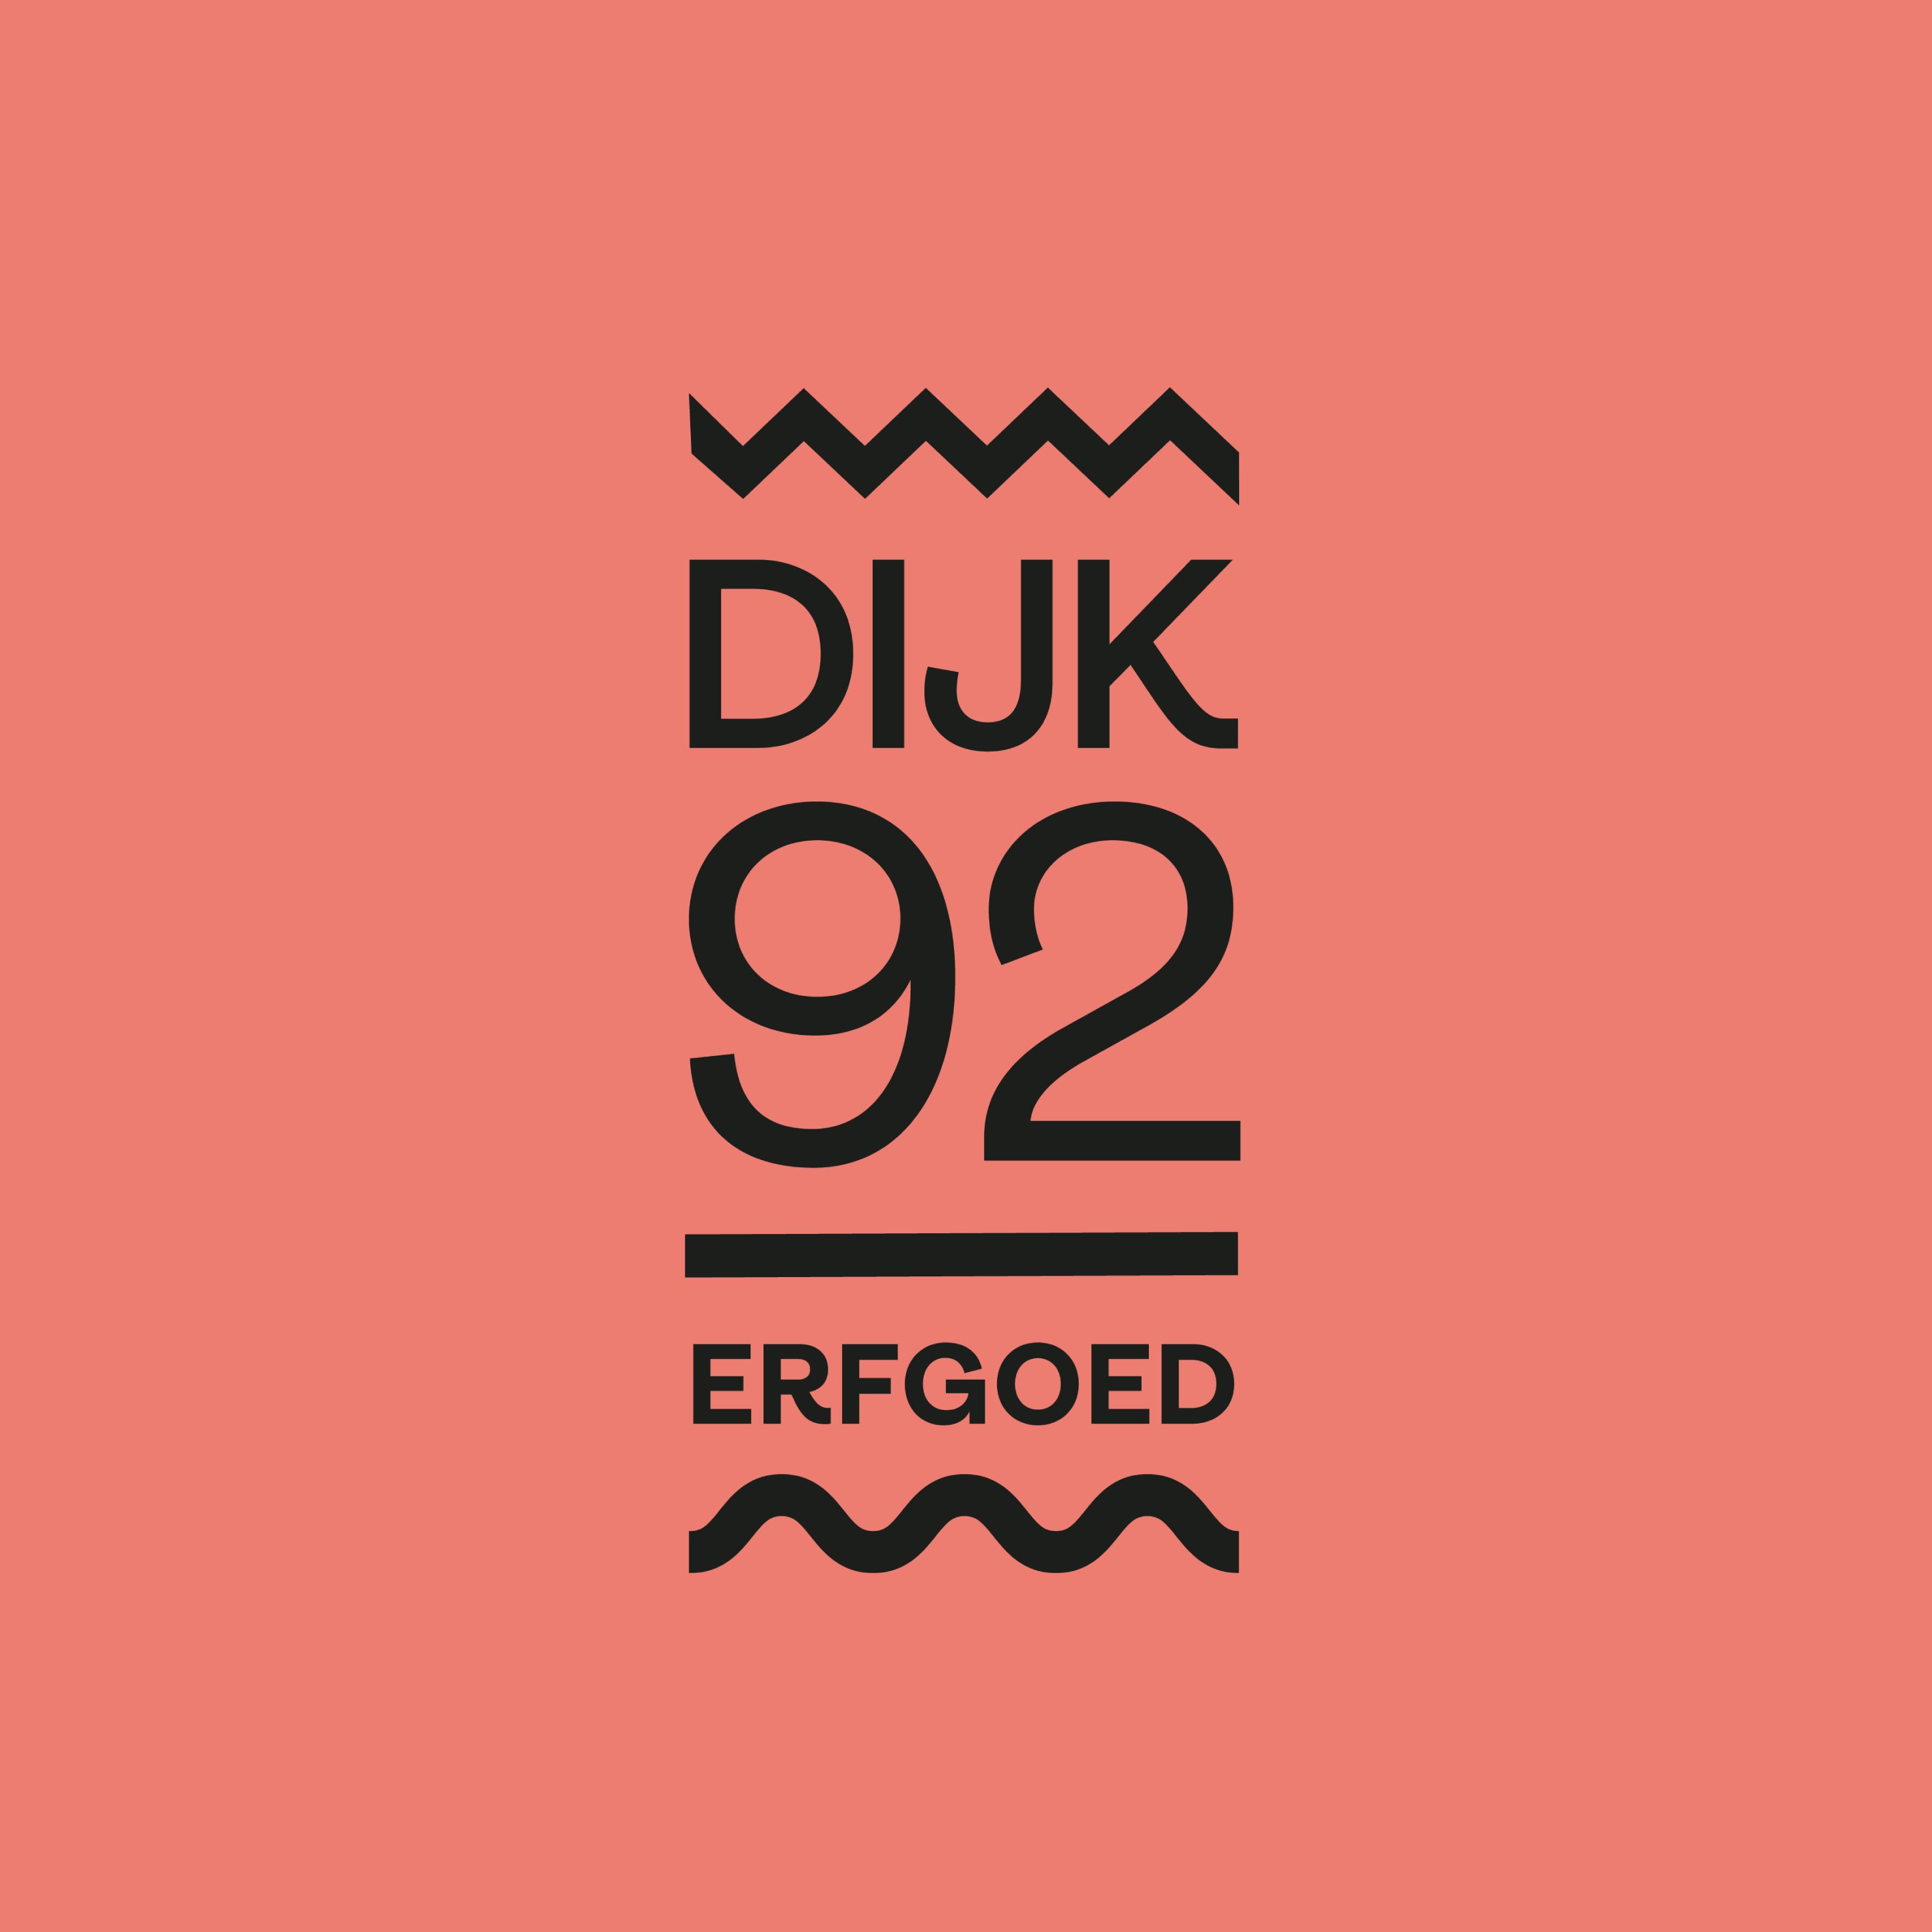 Logo Dijk92 erfgoed